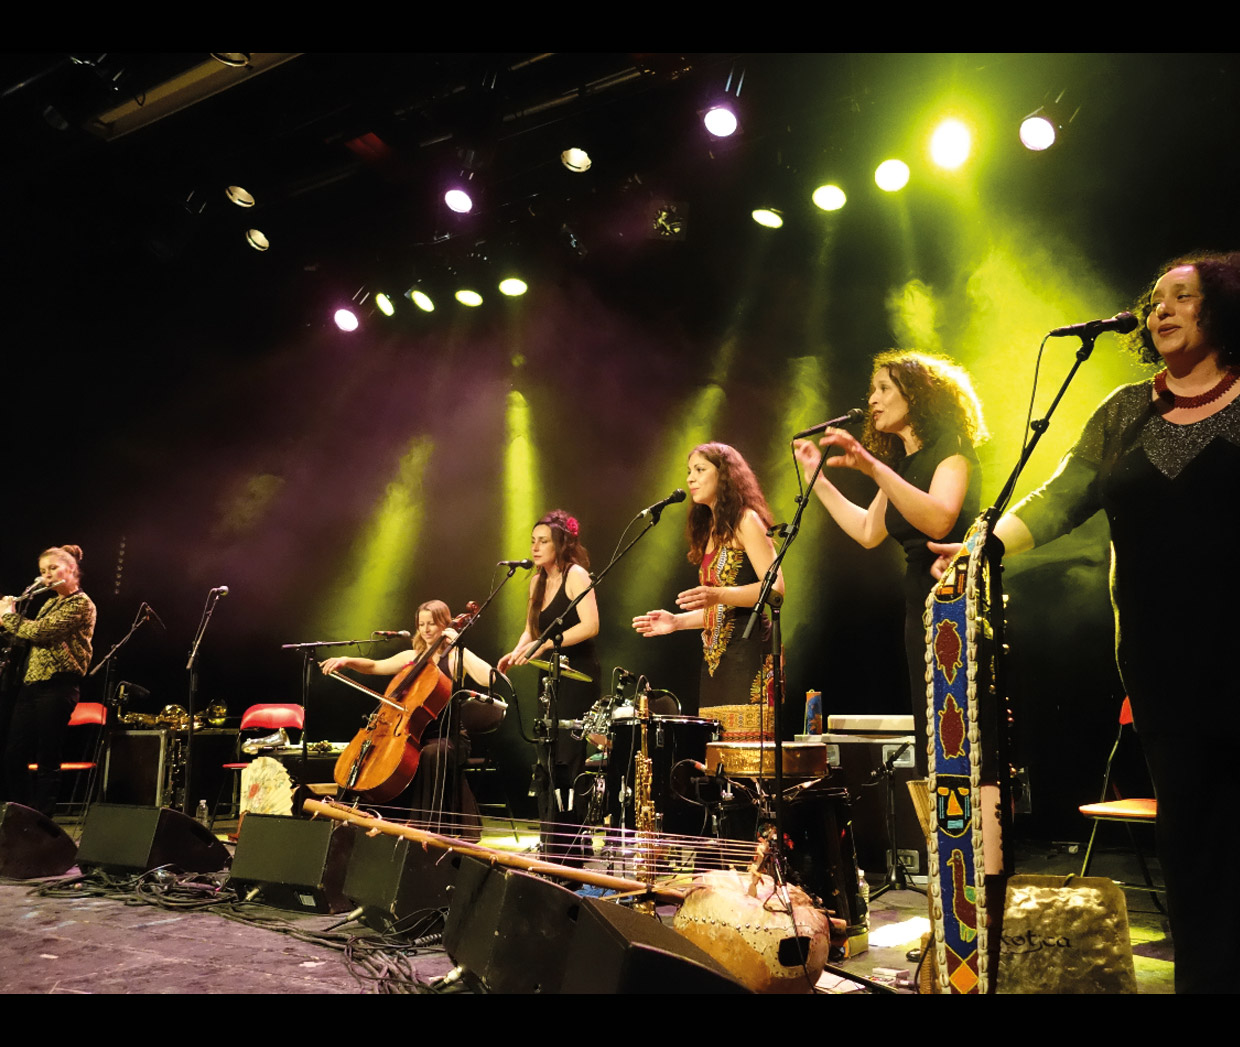 La Tribu des Femmes en concert aux Oreilles en pointe - 6-21 novembre 2015